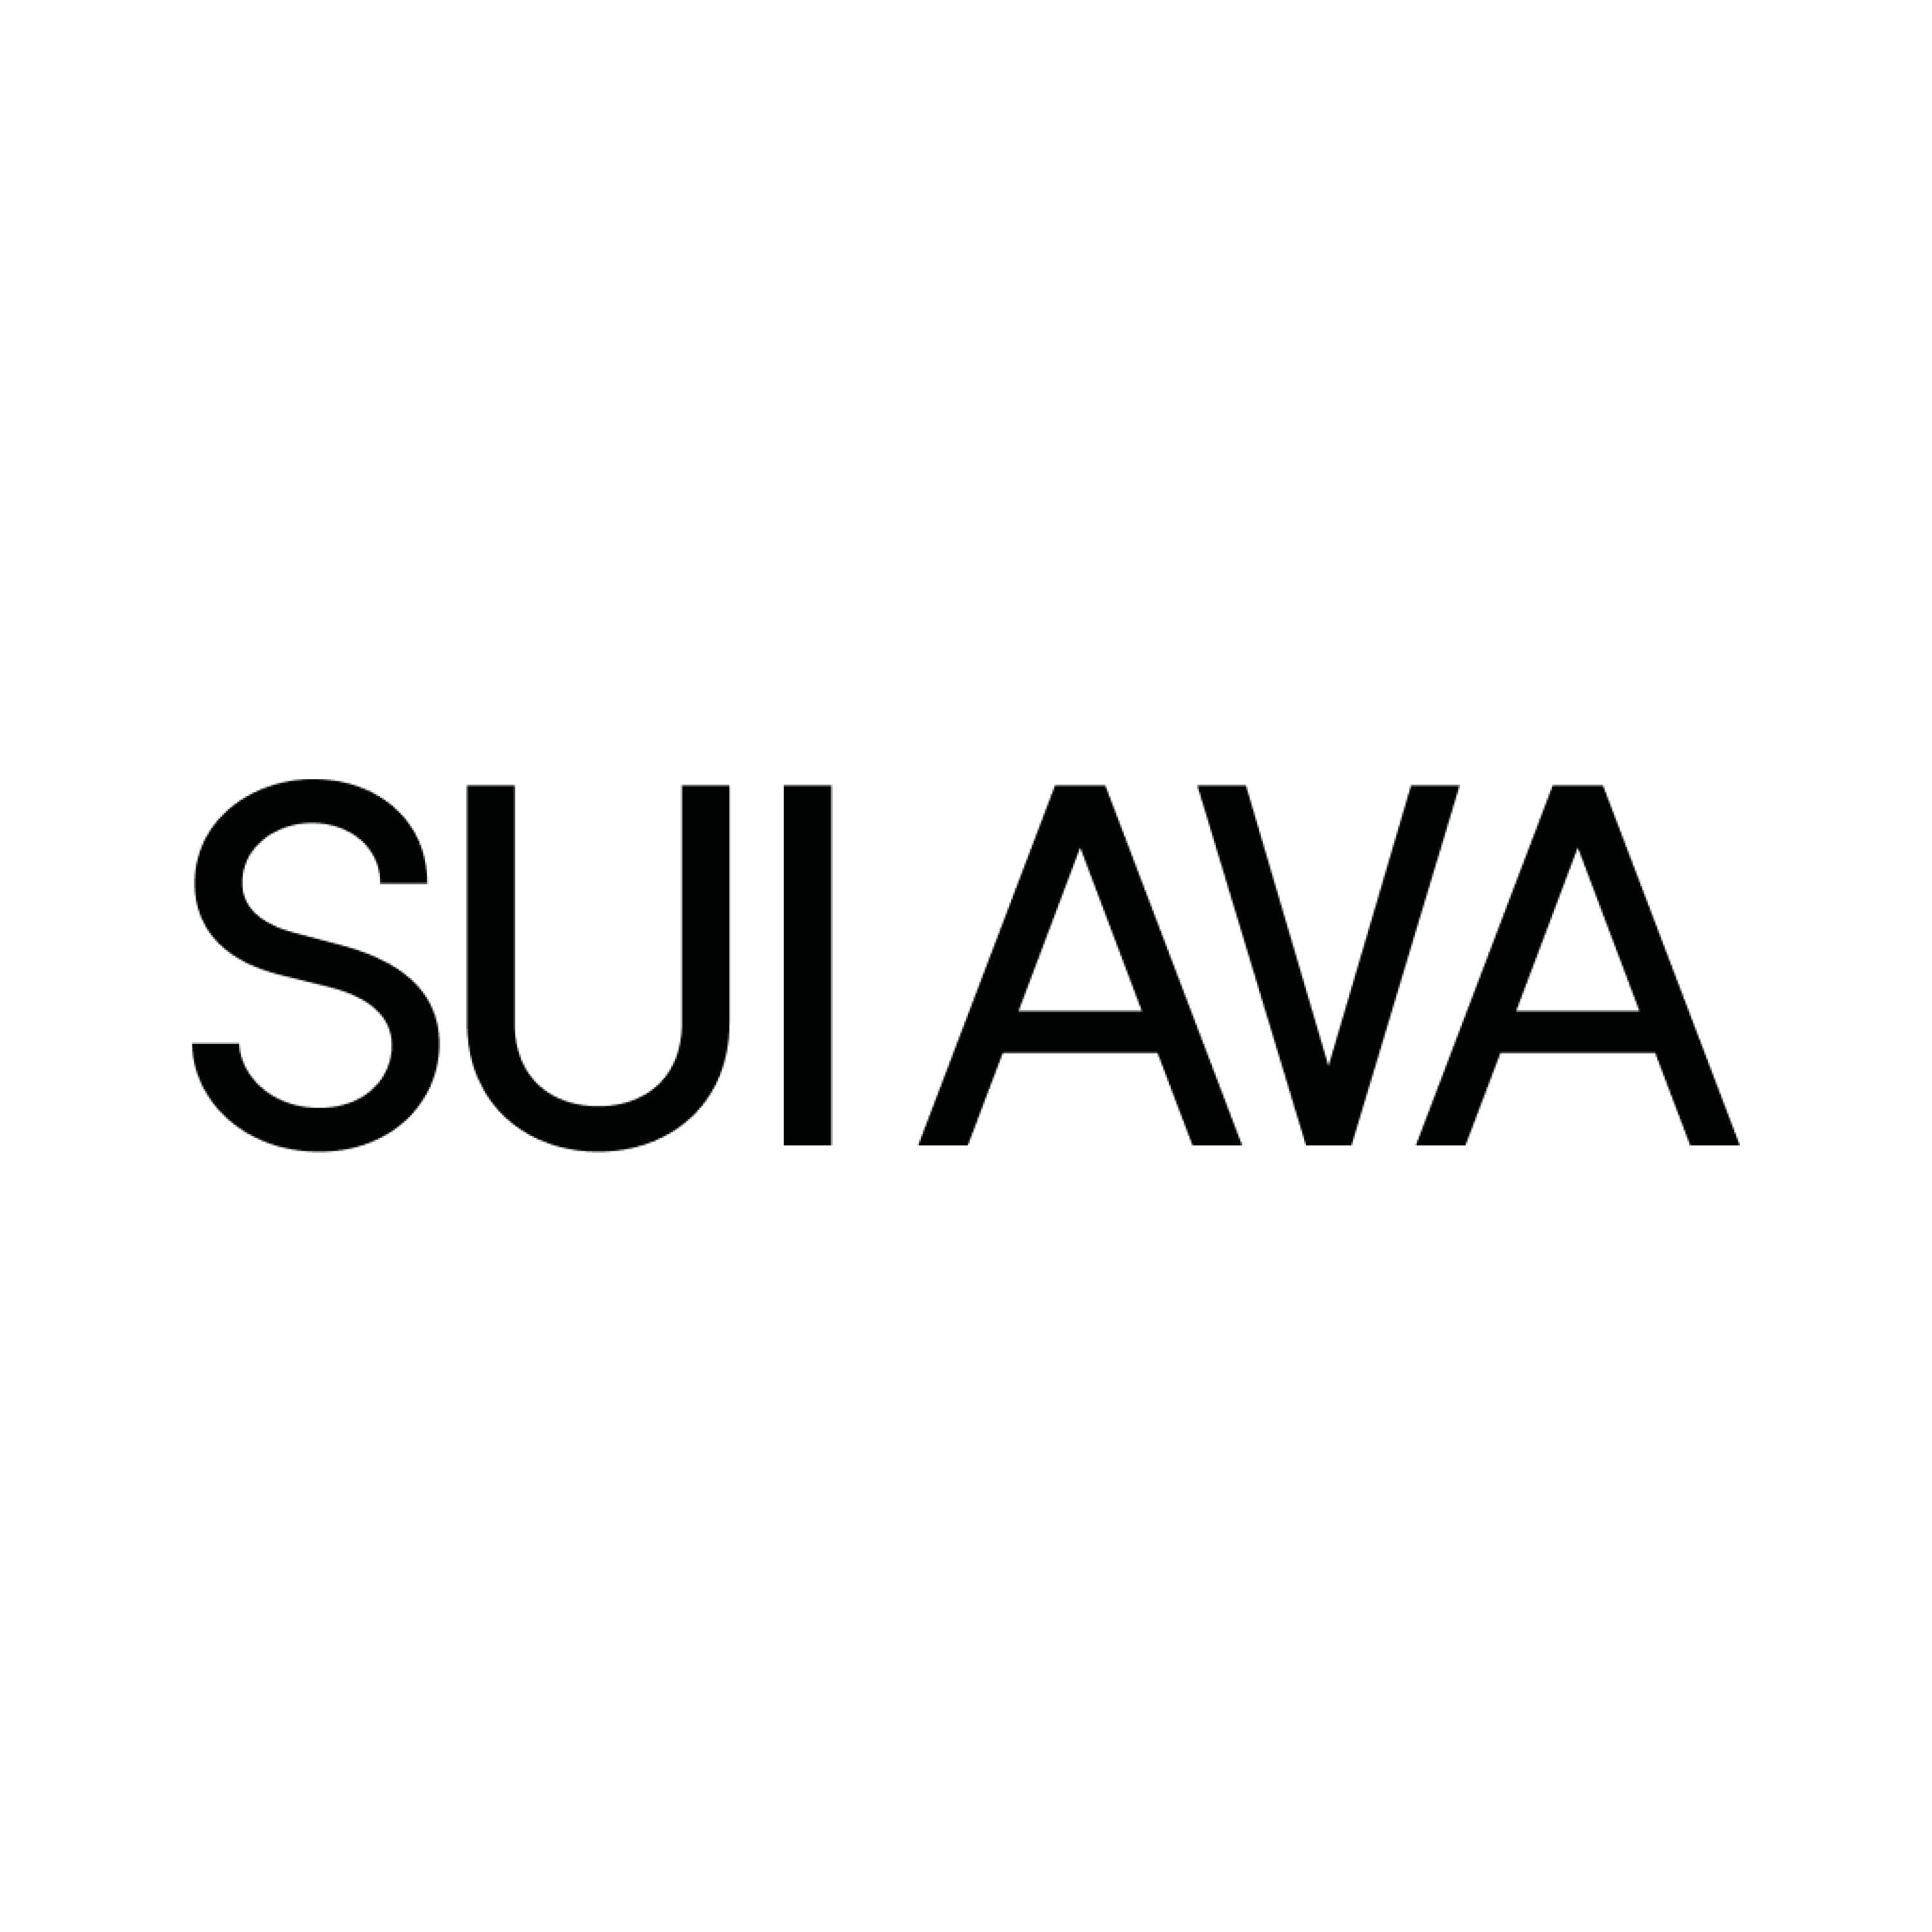 Sui Ava